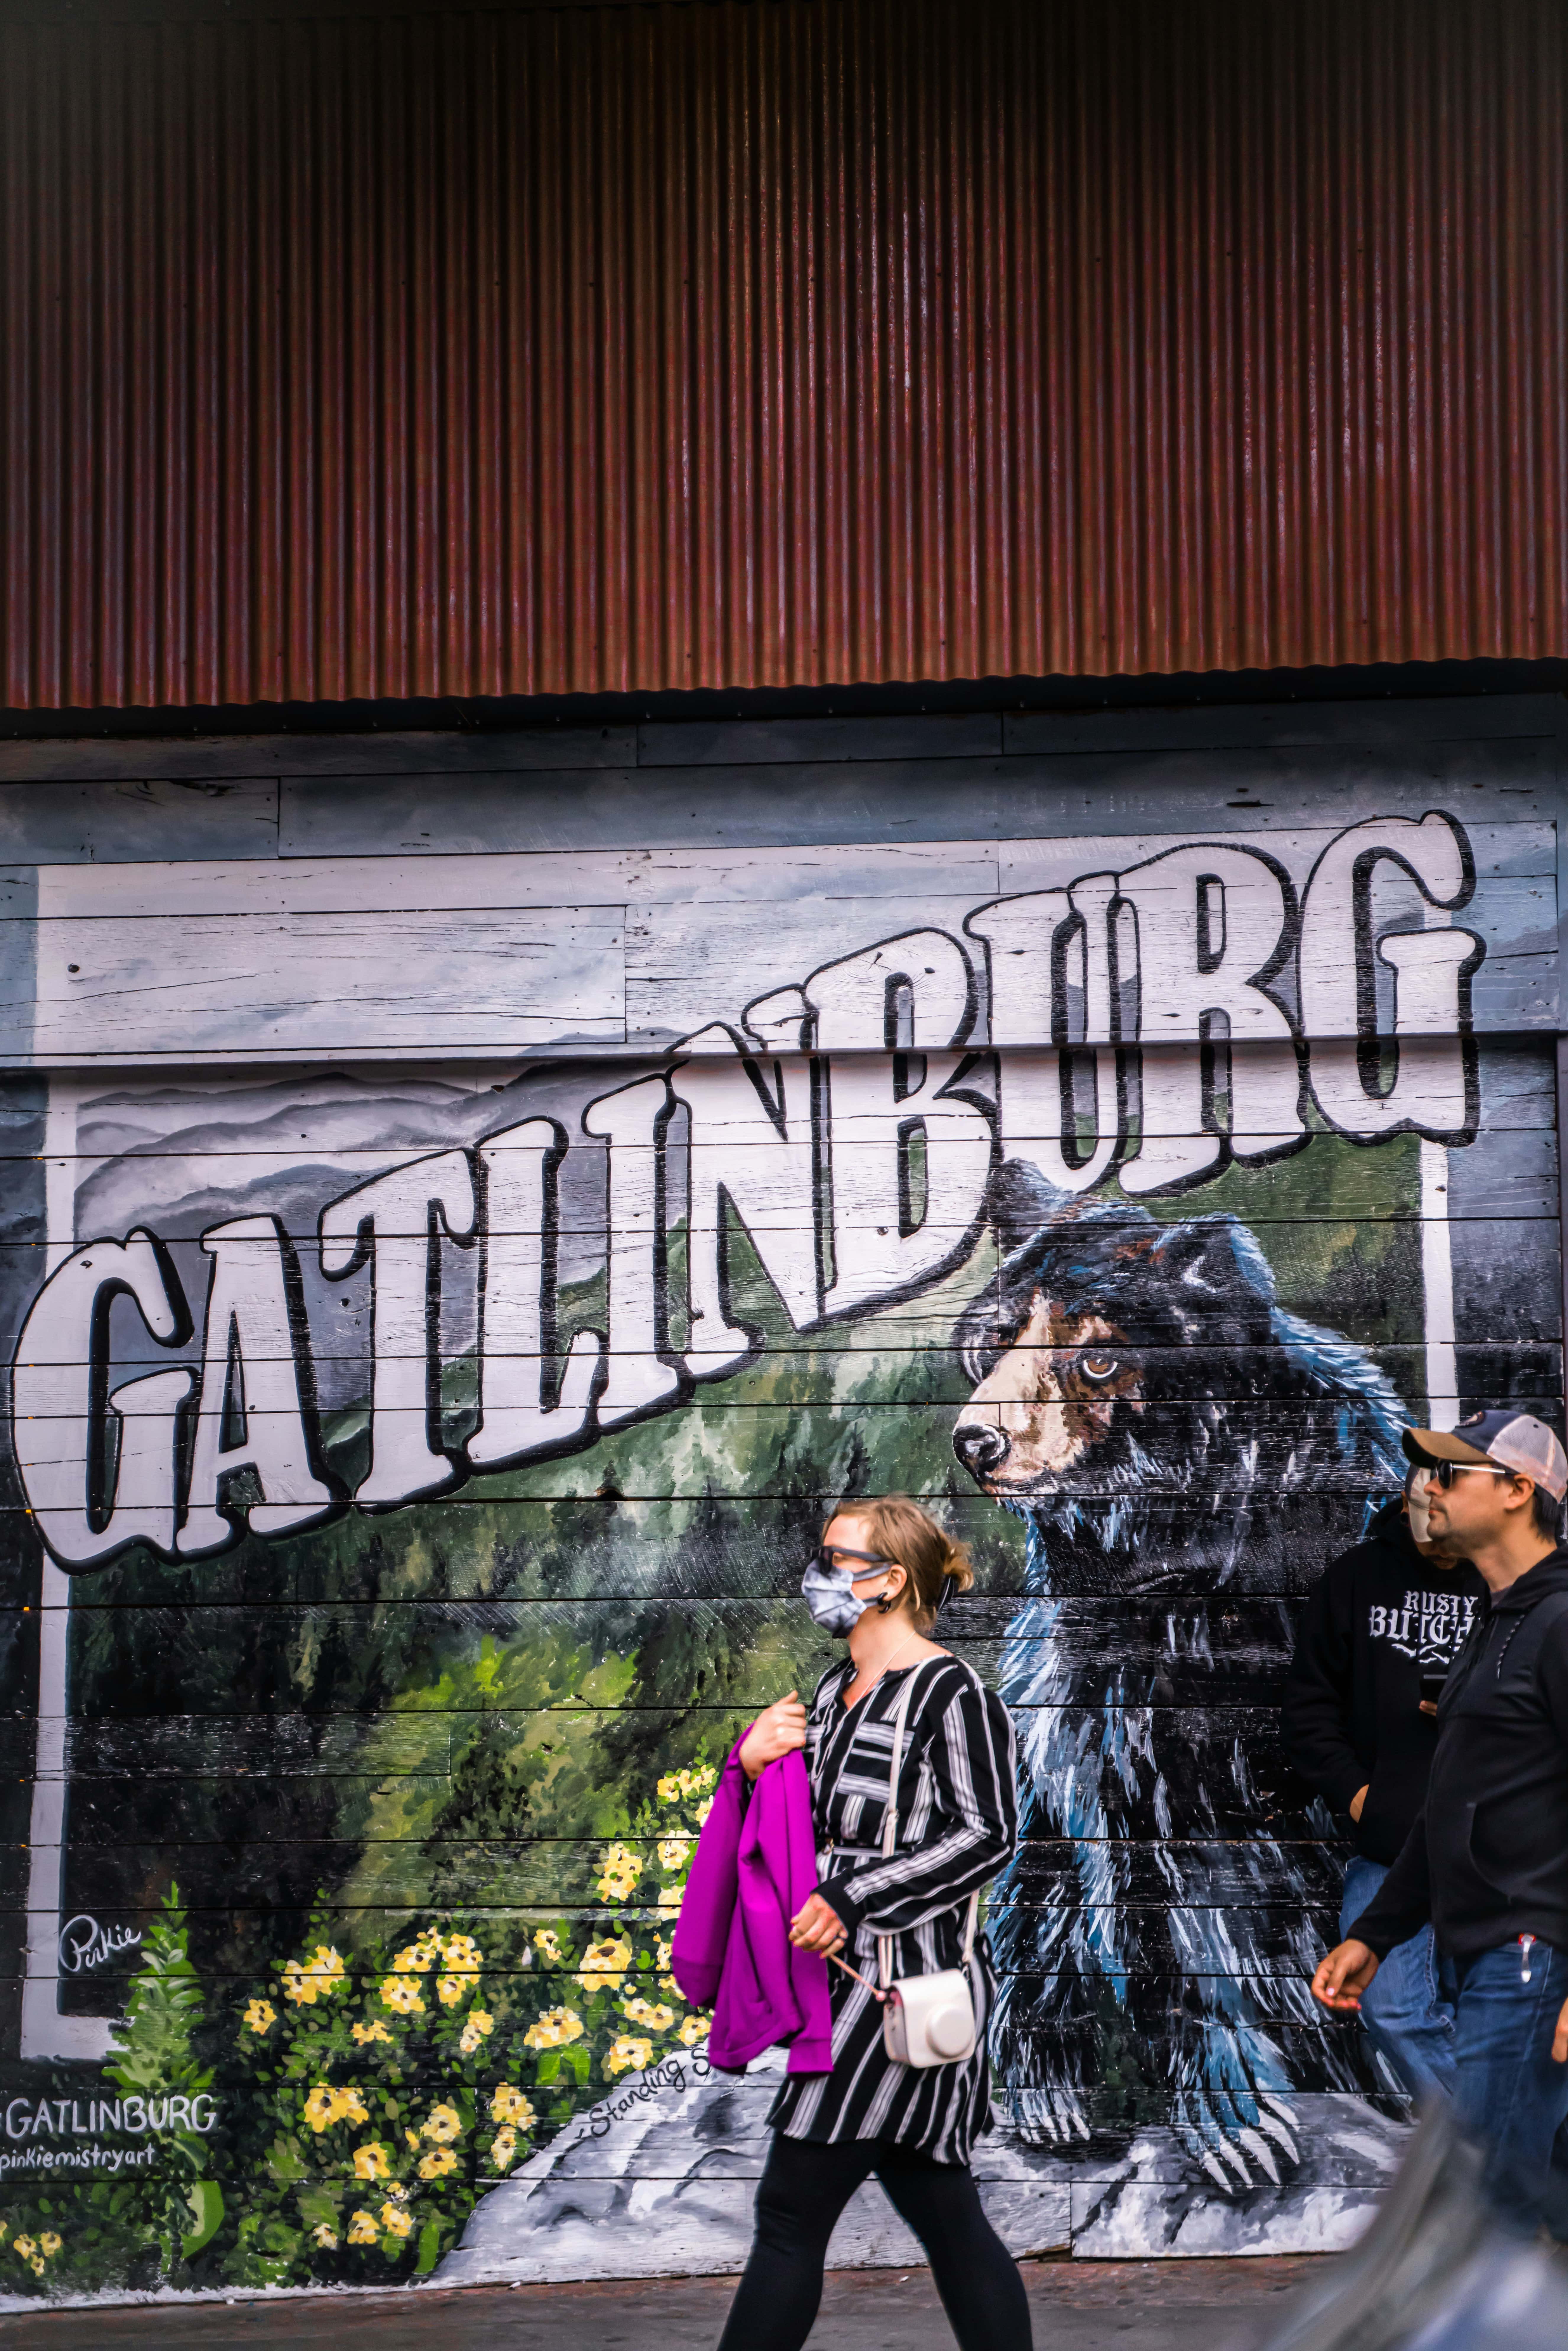 Gatlinburg Lettering for Blog Post Cover